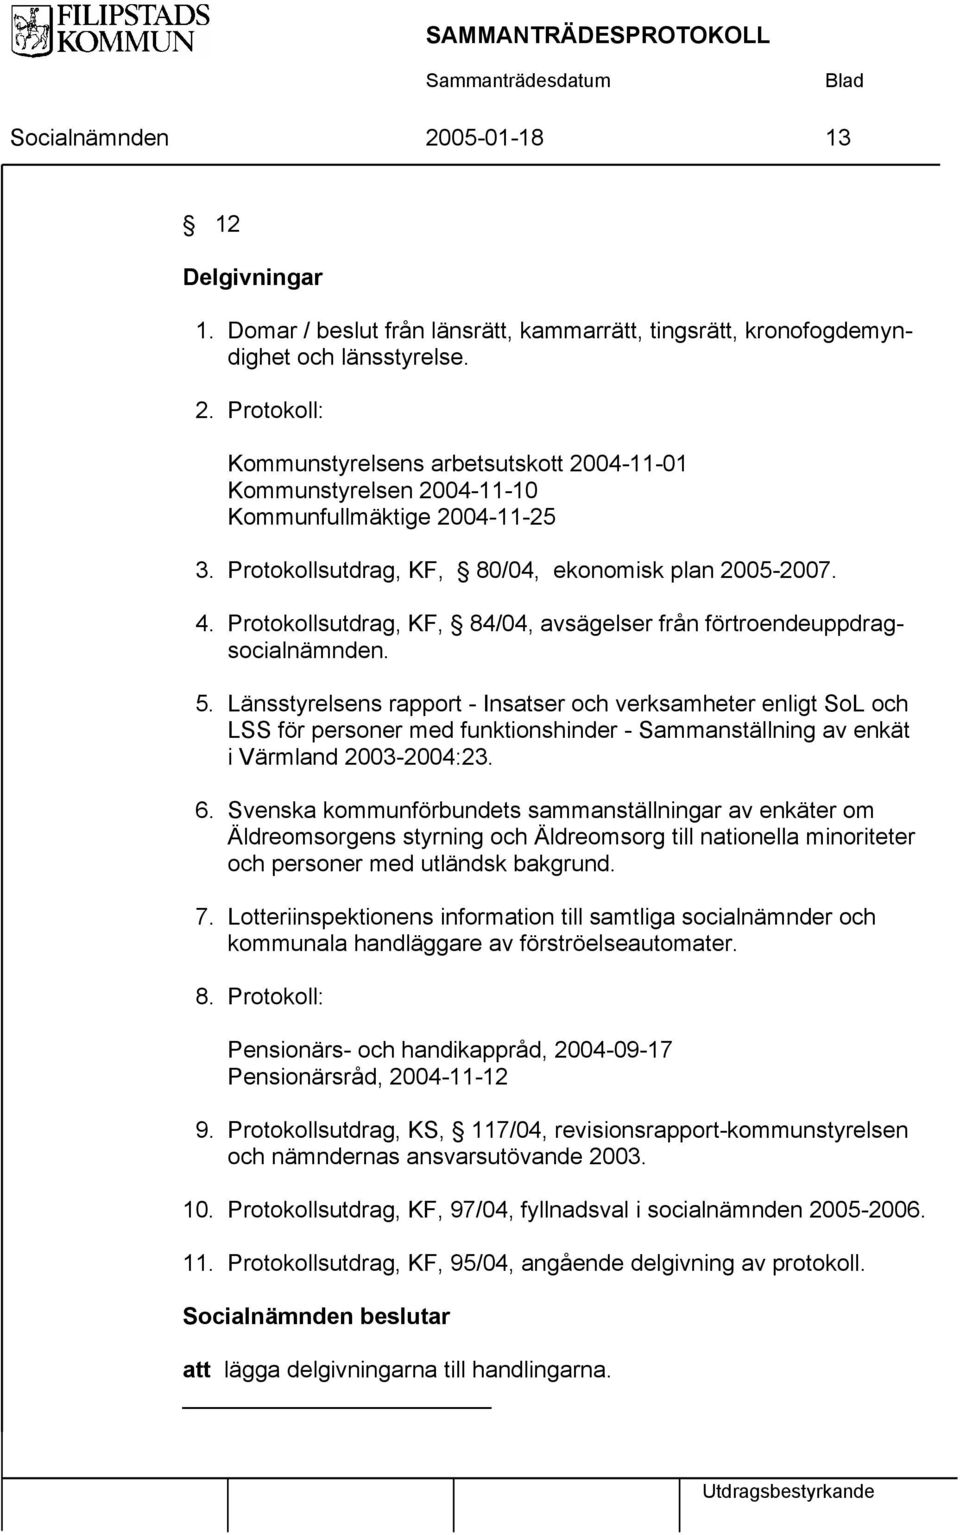 Länsstyrelsens rapport - Insatser och verksamheter enligt SoL och LSS för personer med funktionshinder - Sammanställning av enkät i Värmland 2003-2004:23. 6.